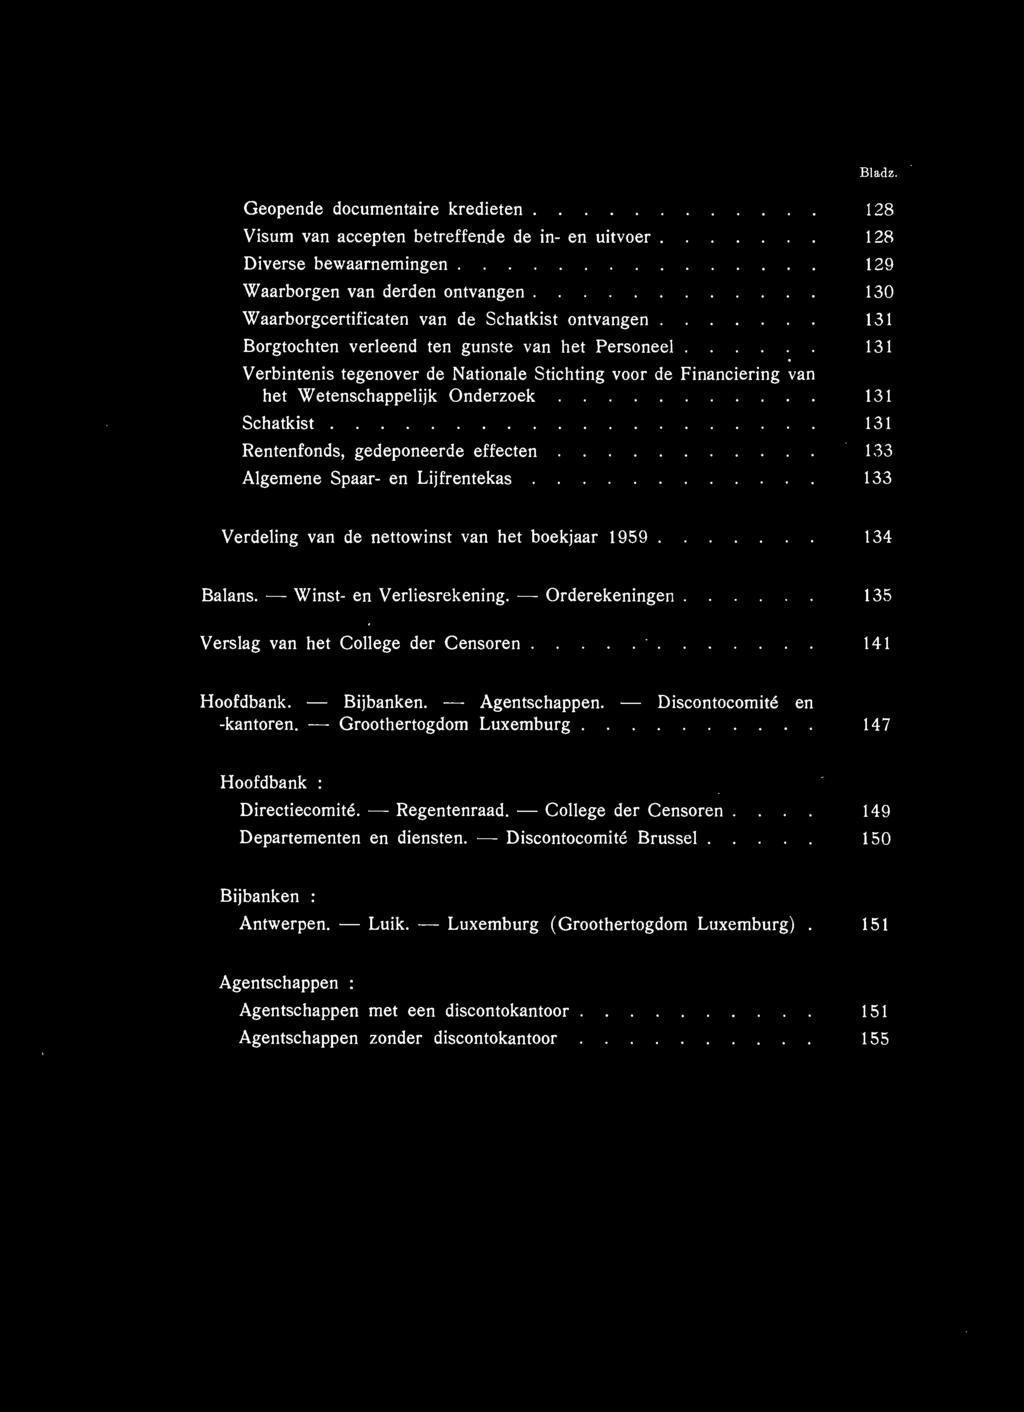 Wetenschappelijk Onderzoek 131 Schatkist. 131 Rentenfonds, gedeponeerde effecten 133 Algemene Spaar- en Lijfrentekas 133 Verdeling van de nettowinst van het boekjaar 1959. 134 Balans.